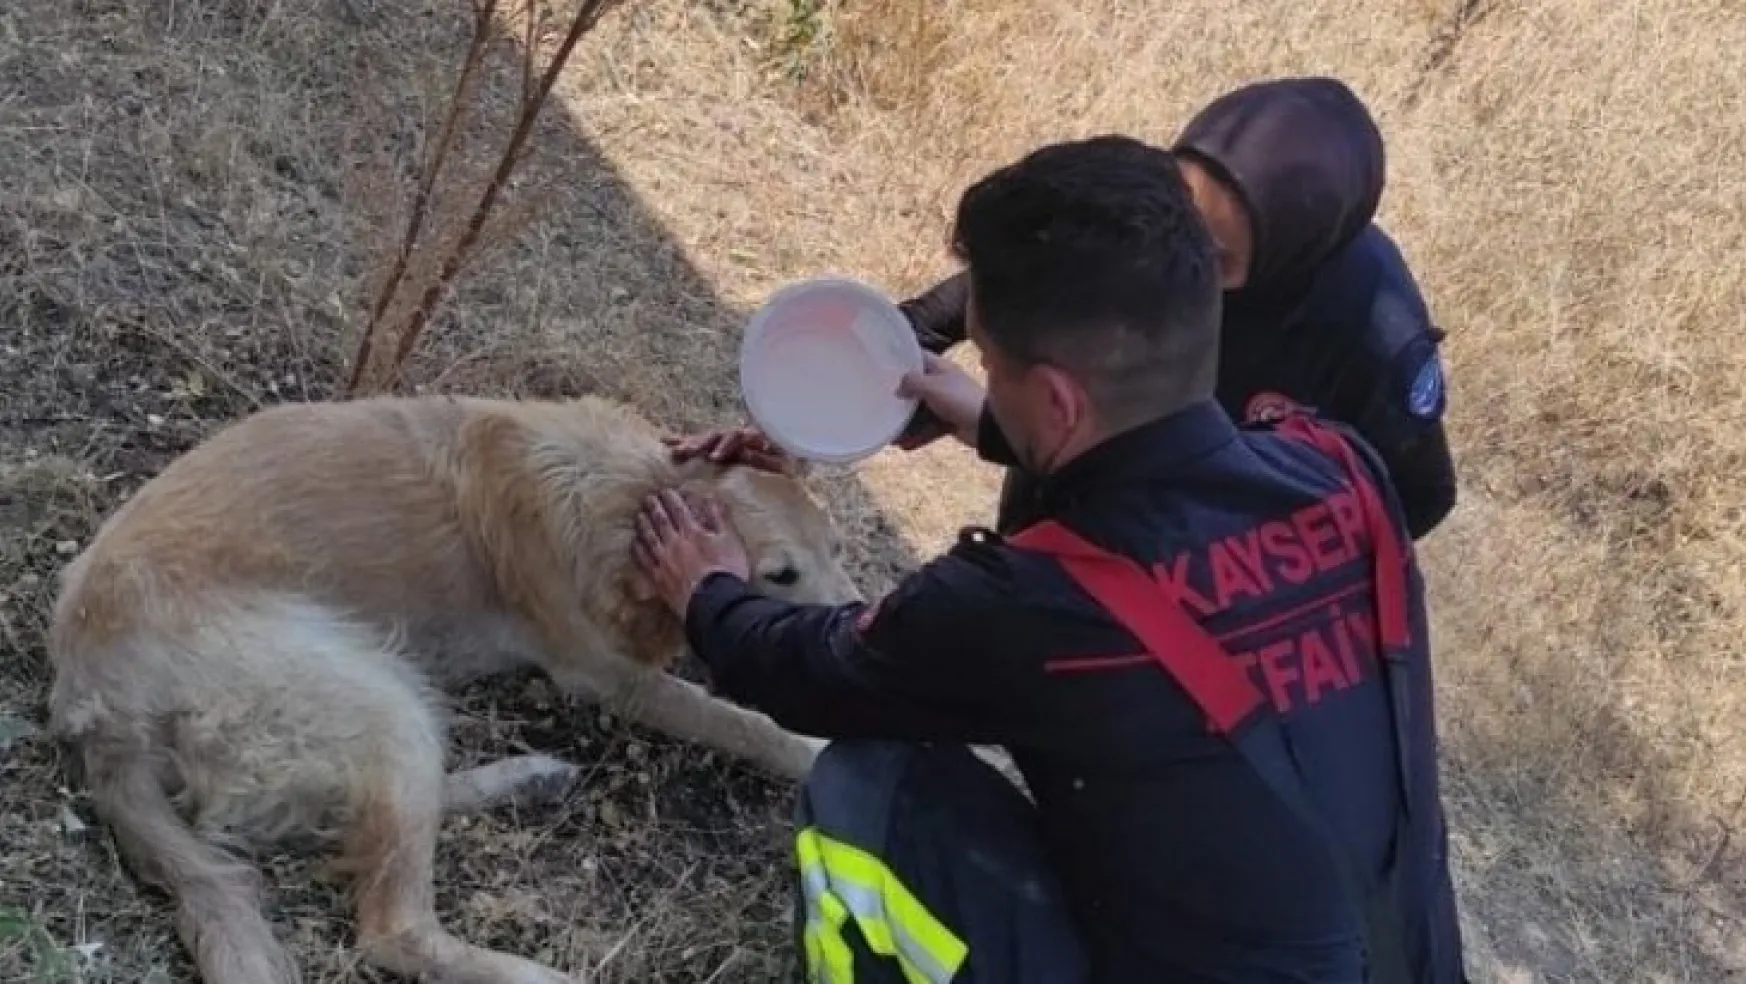 Yanmak üzere olan köpek itfaiye ekiplerince kurtarıldı